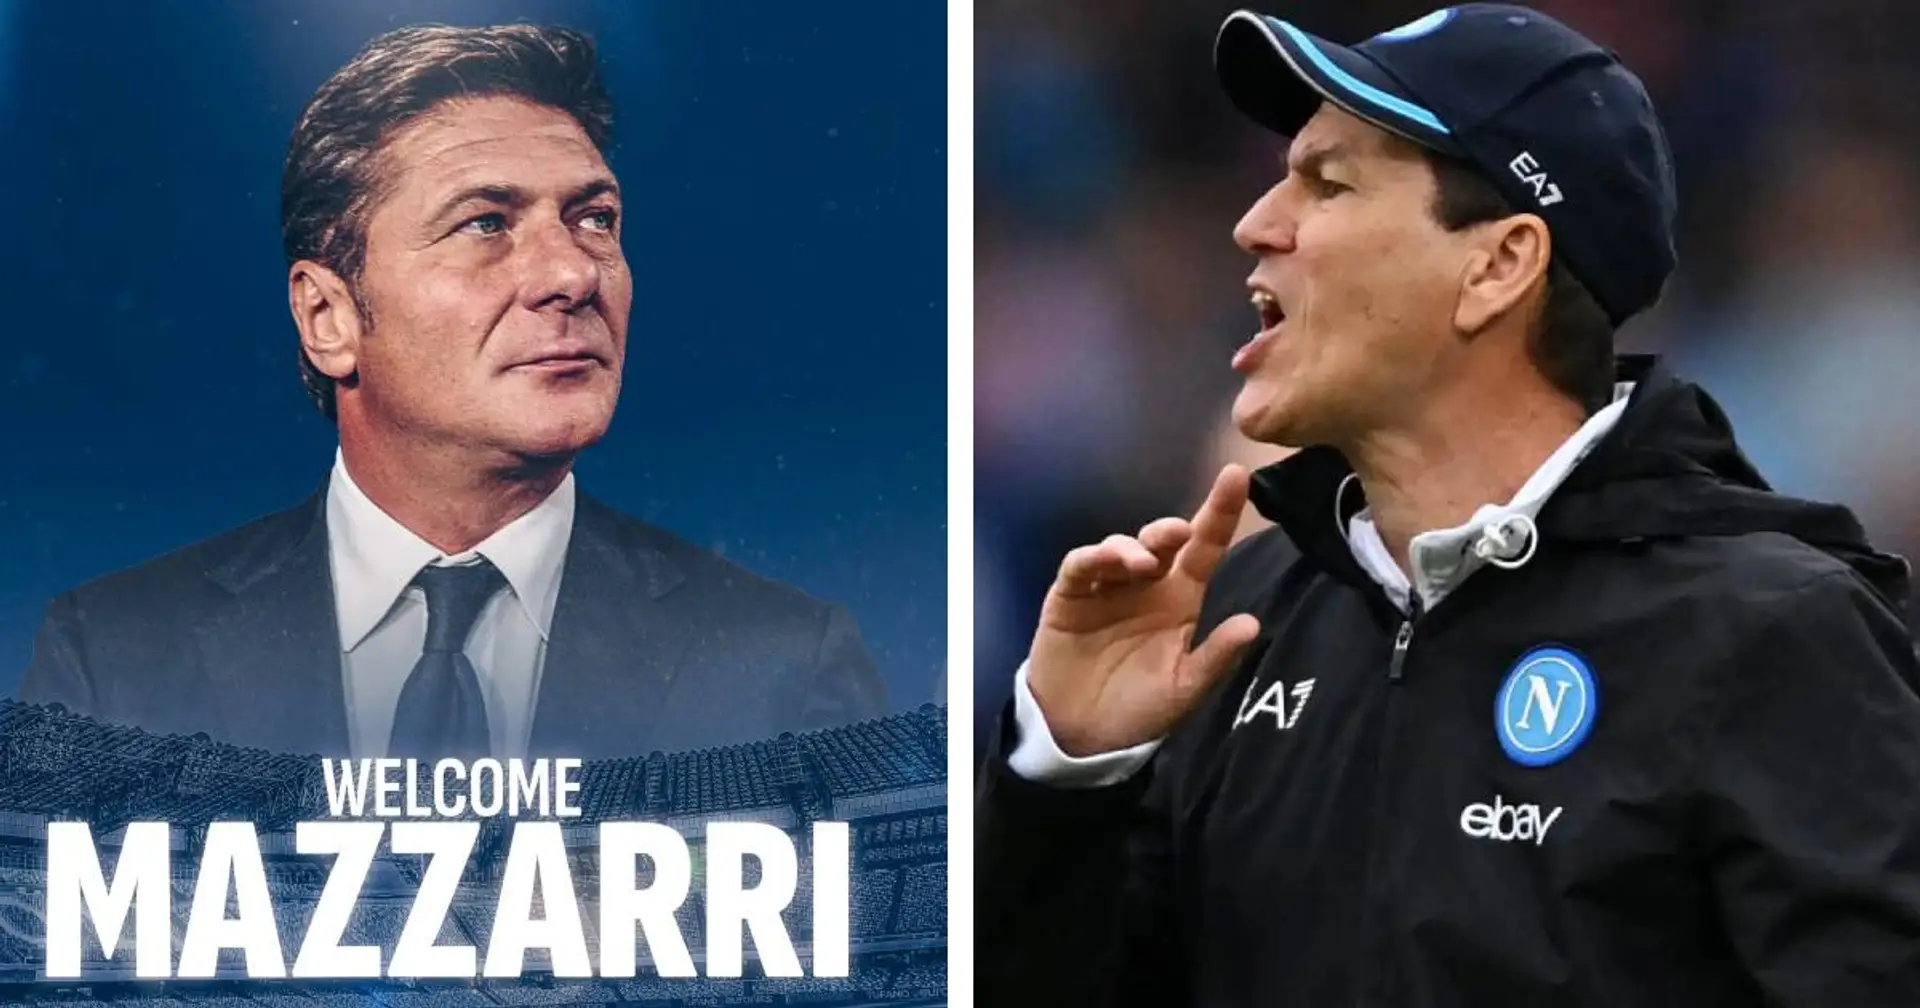 UFFICIALE| Walter Mazzarri è il nuovo allenatore del Napoli, Rudi Garcia esonerato